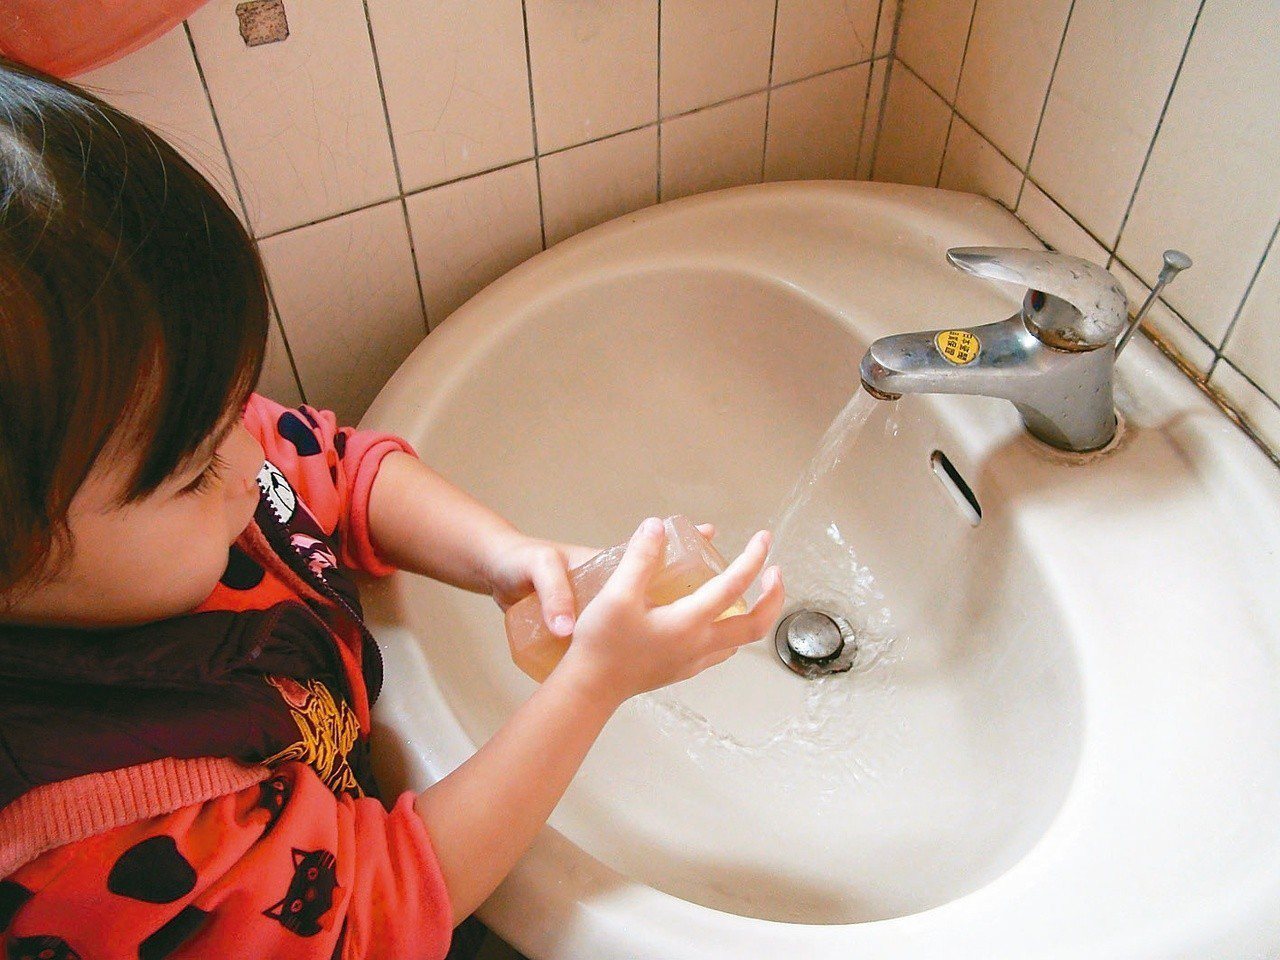 幼兒是流感高風險族群，醫師提醒家長，除了接種流感之外，一定要讓孩子養成成卻洗手習慣，做好個人衛生。